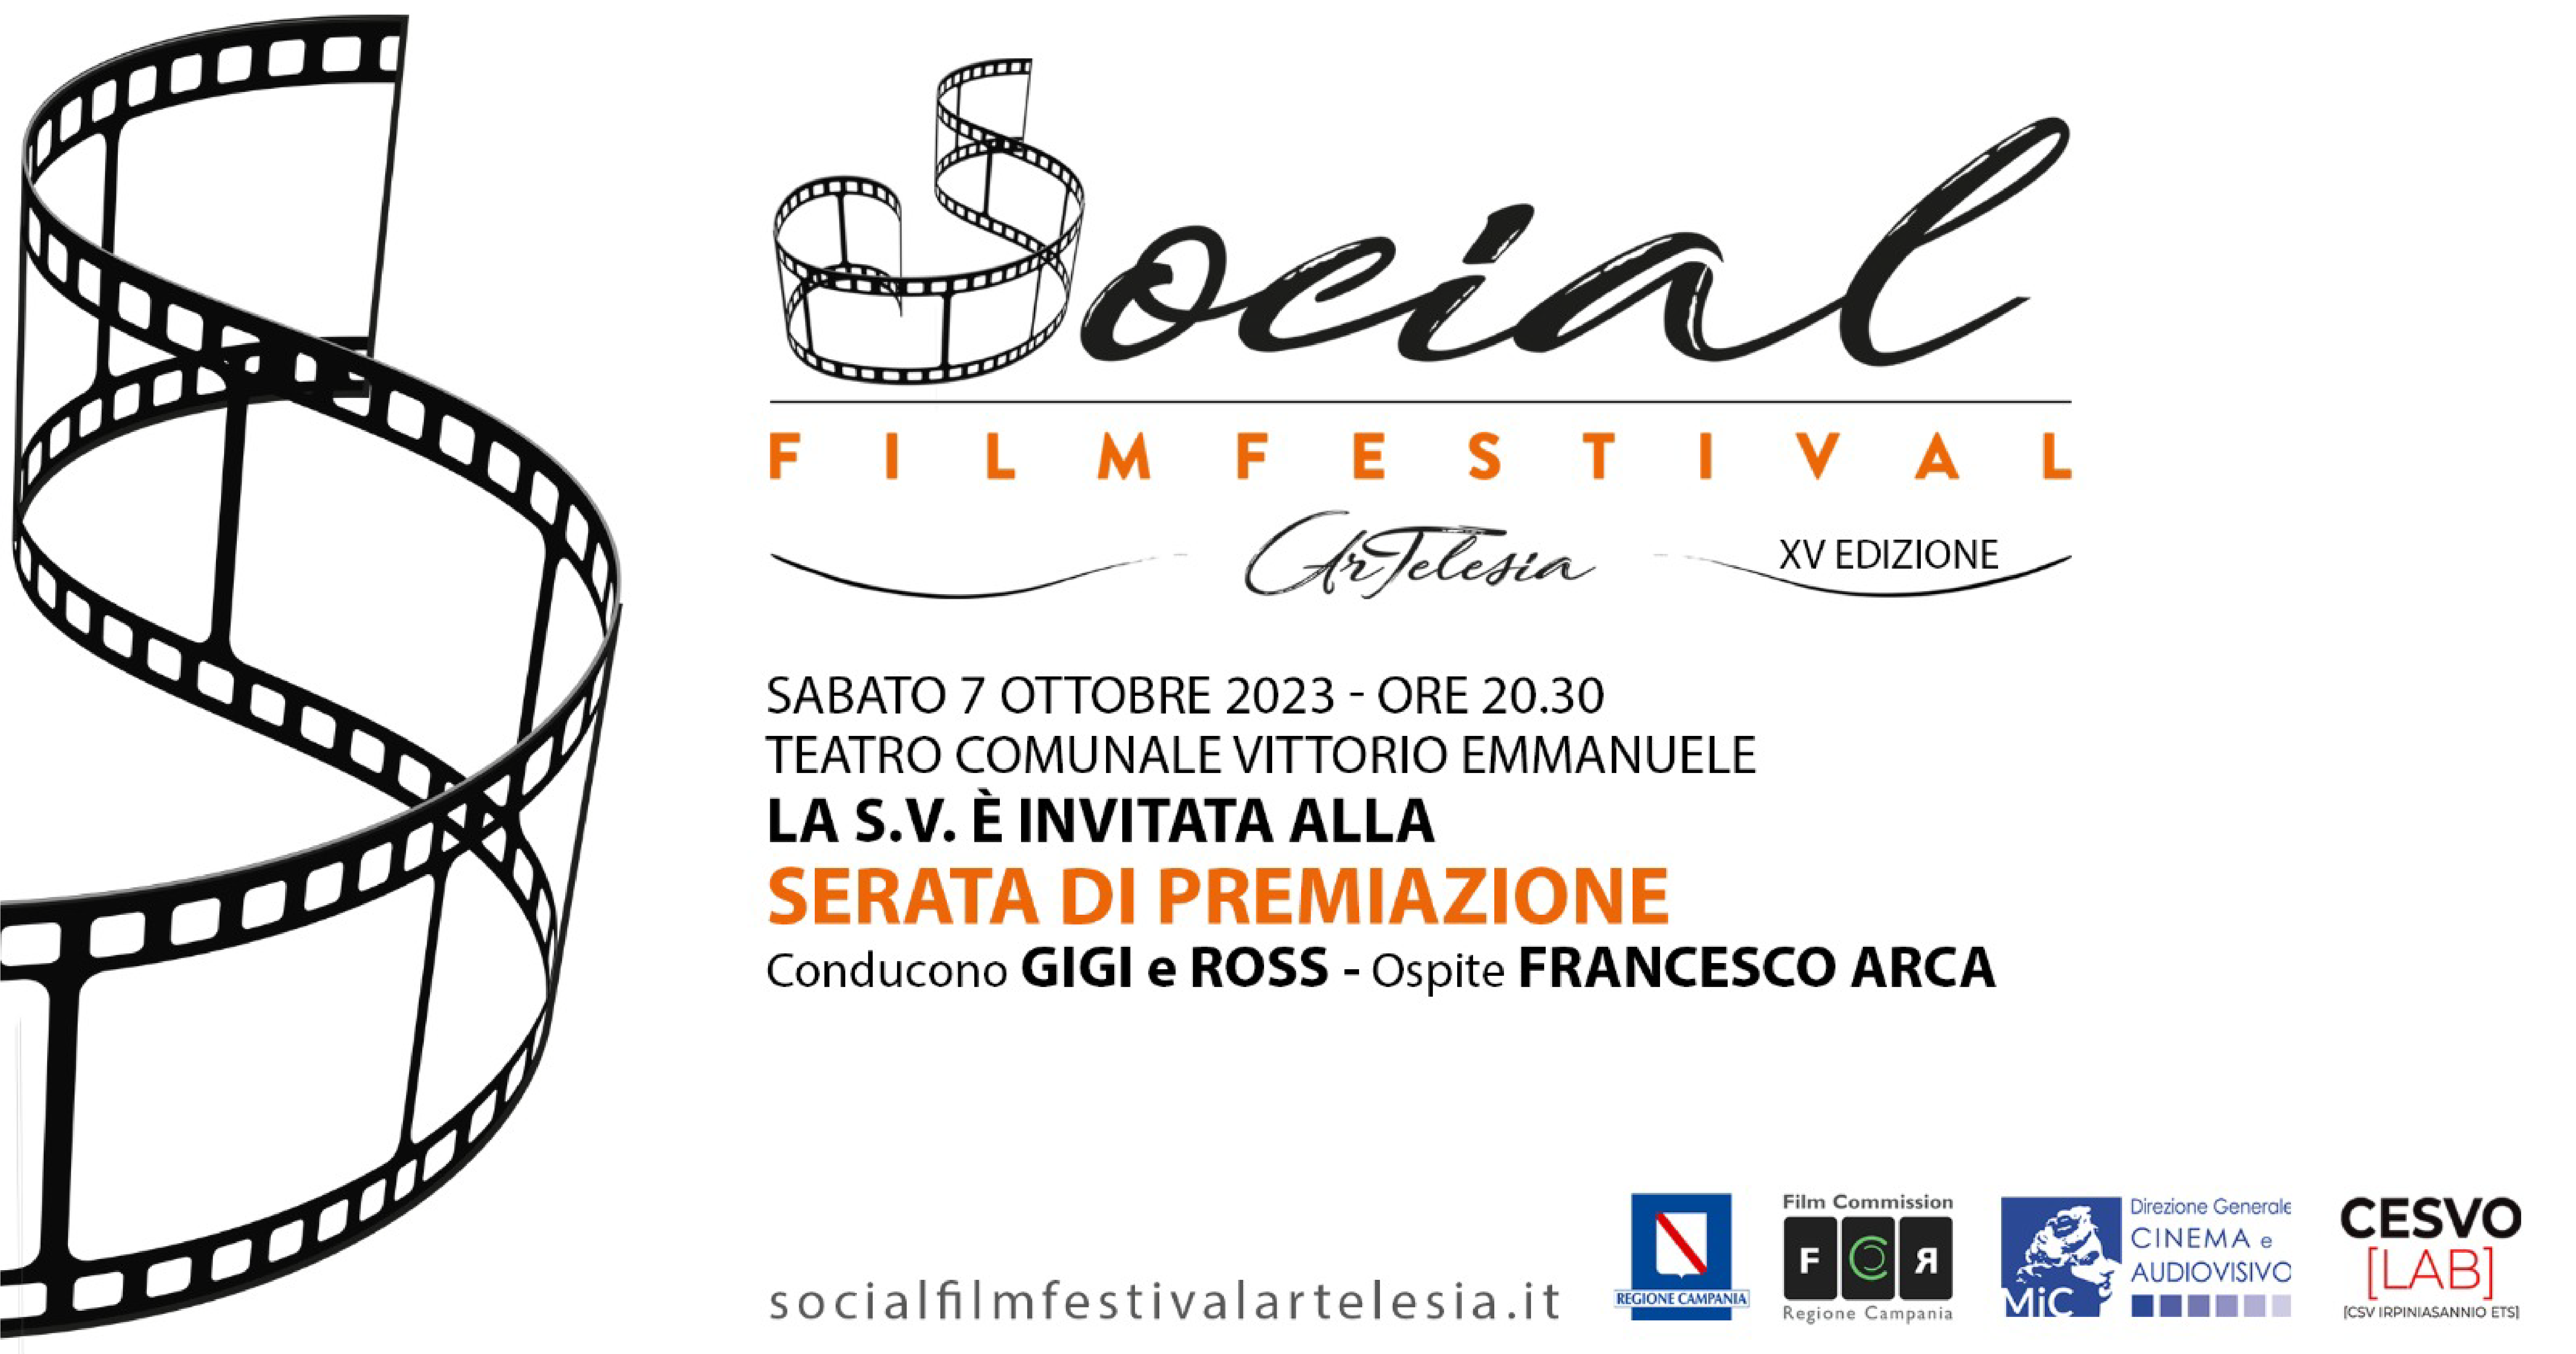 Social Film Festival Artelesia, il Gala di Premiazione con Francesco Arca e Gigi & Ross